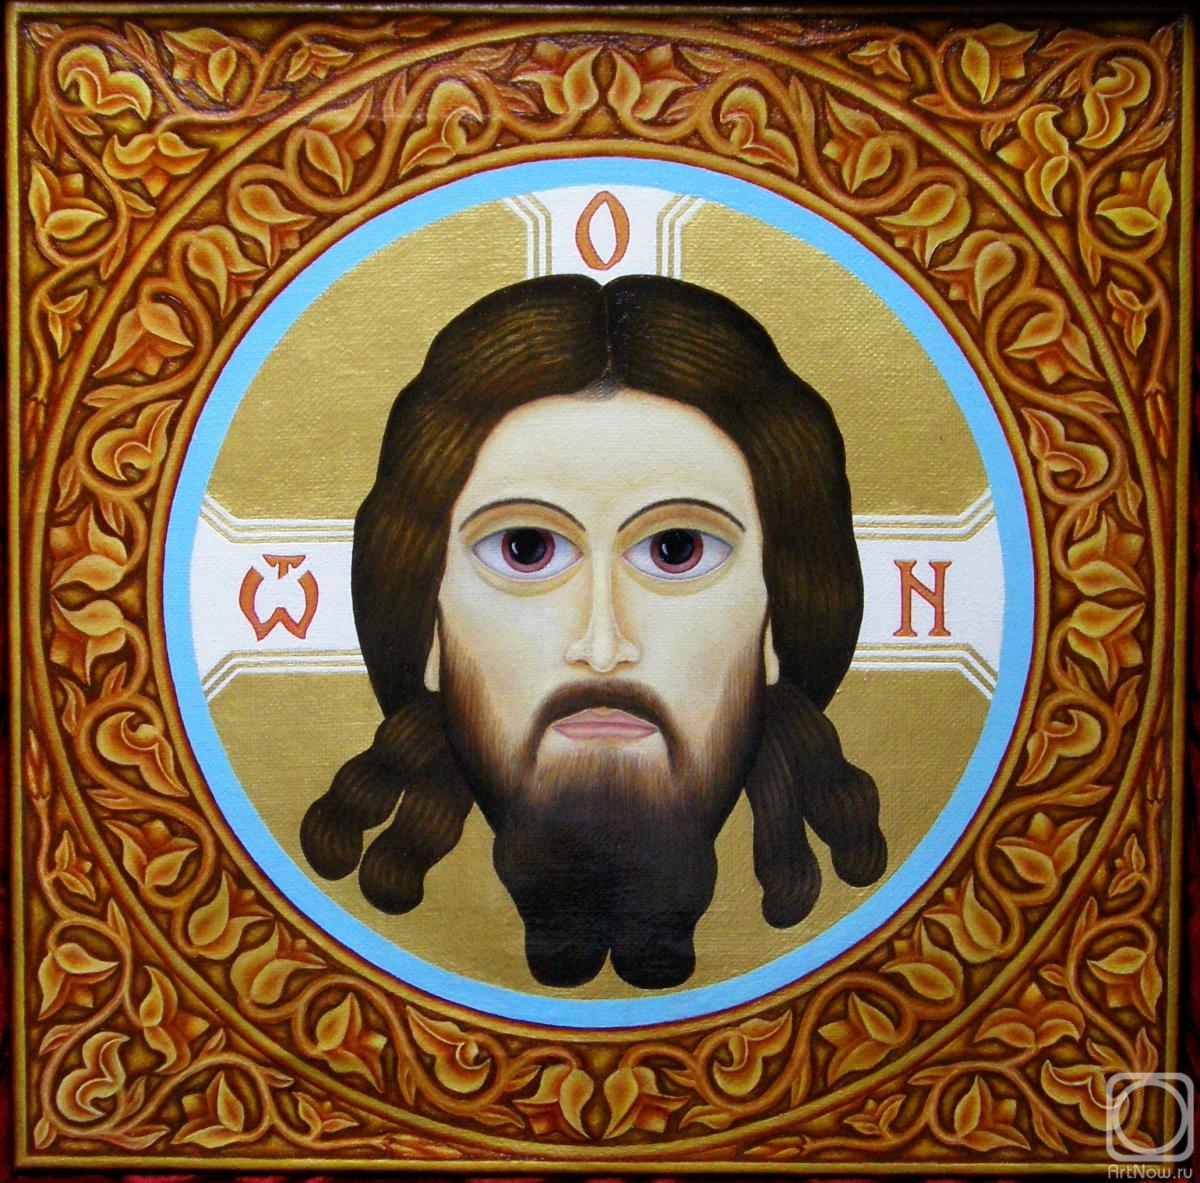 Hrapinskiy Vladimir. Savior